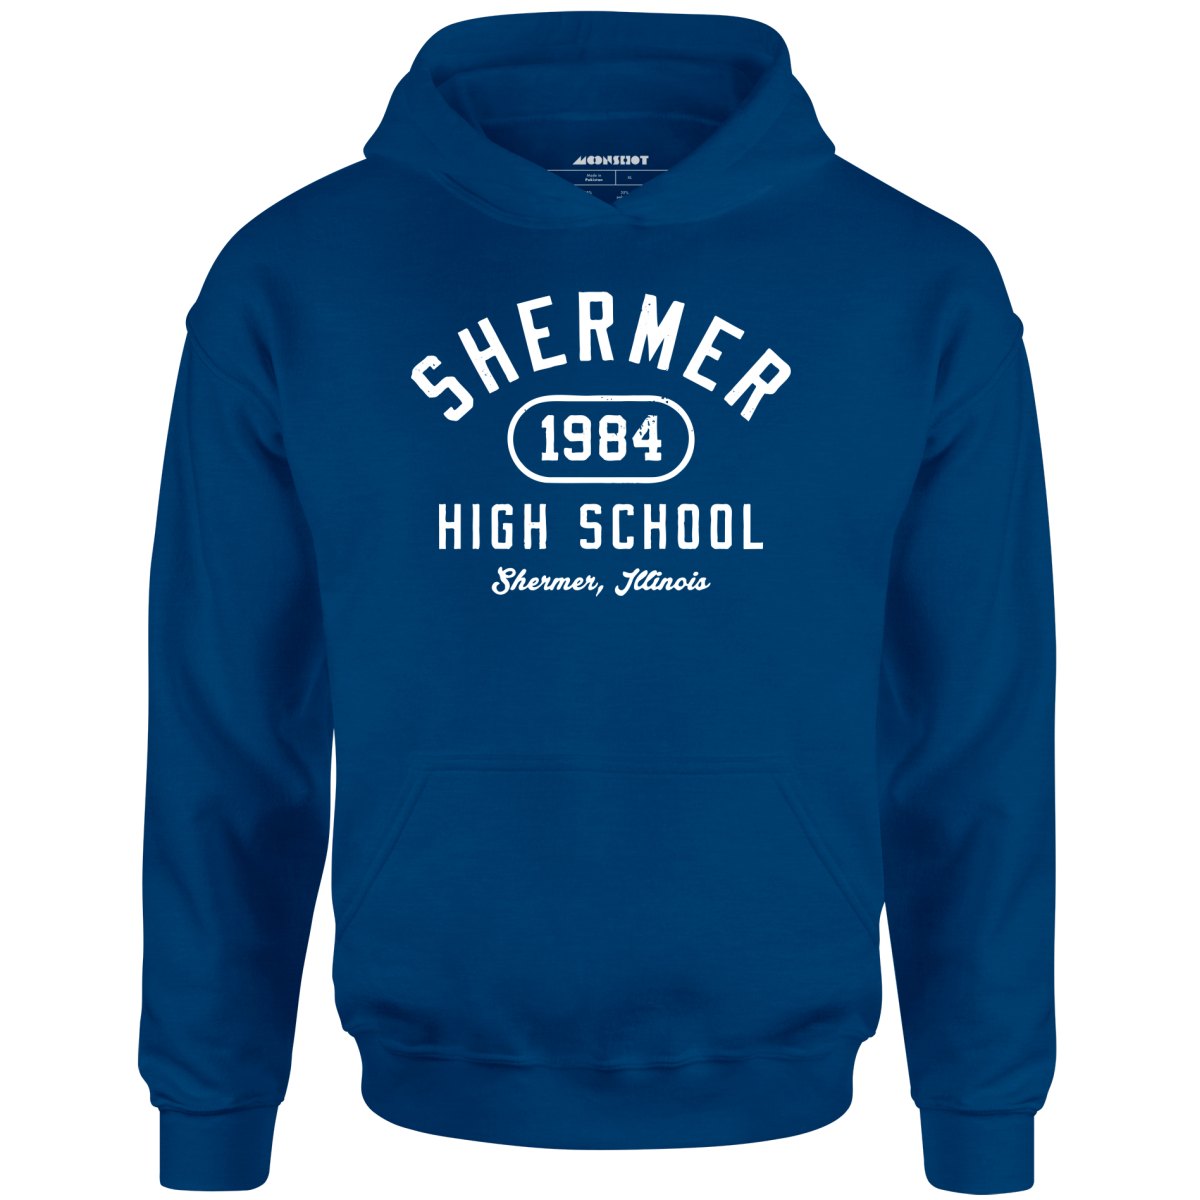 Shermer High School 1984 - Unisex Hoodie